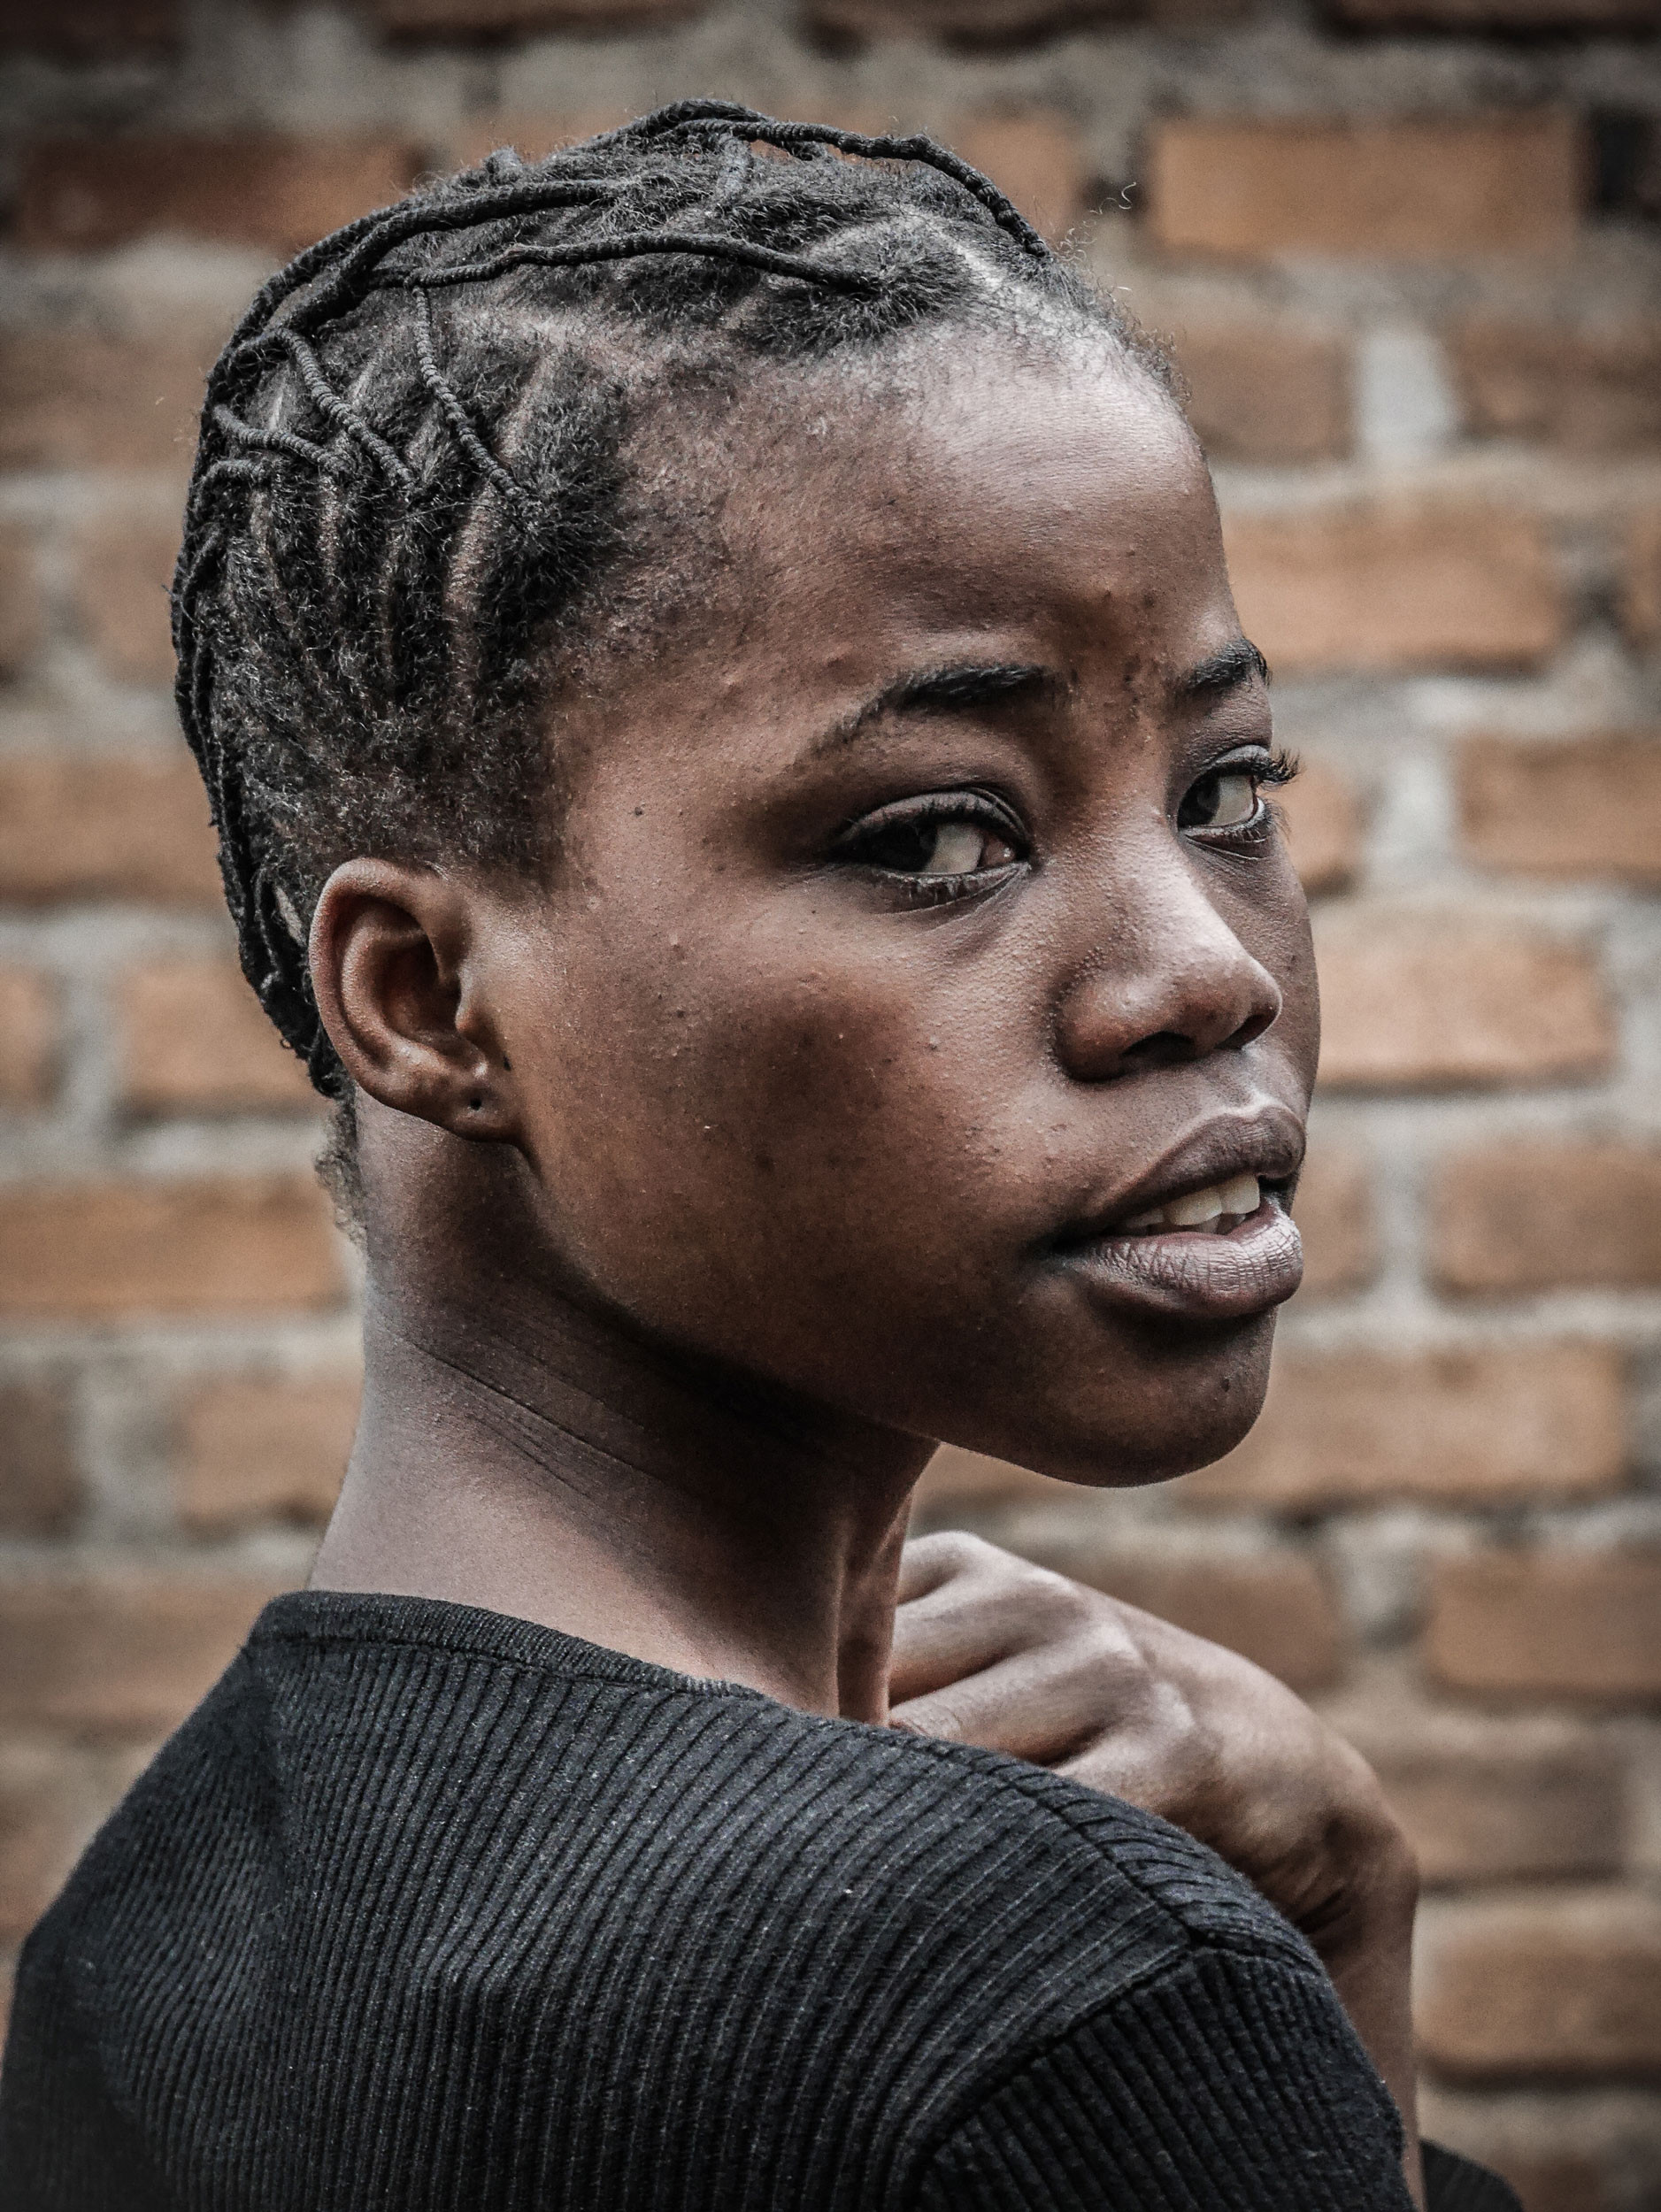 Bukavu, est de la RDC, juillet 2020. Une jeune fille portant une coiffure traditionnelle pendant le confinement. © Raissa Rwizibuka Karama pour la Fondation Carmignac